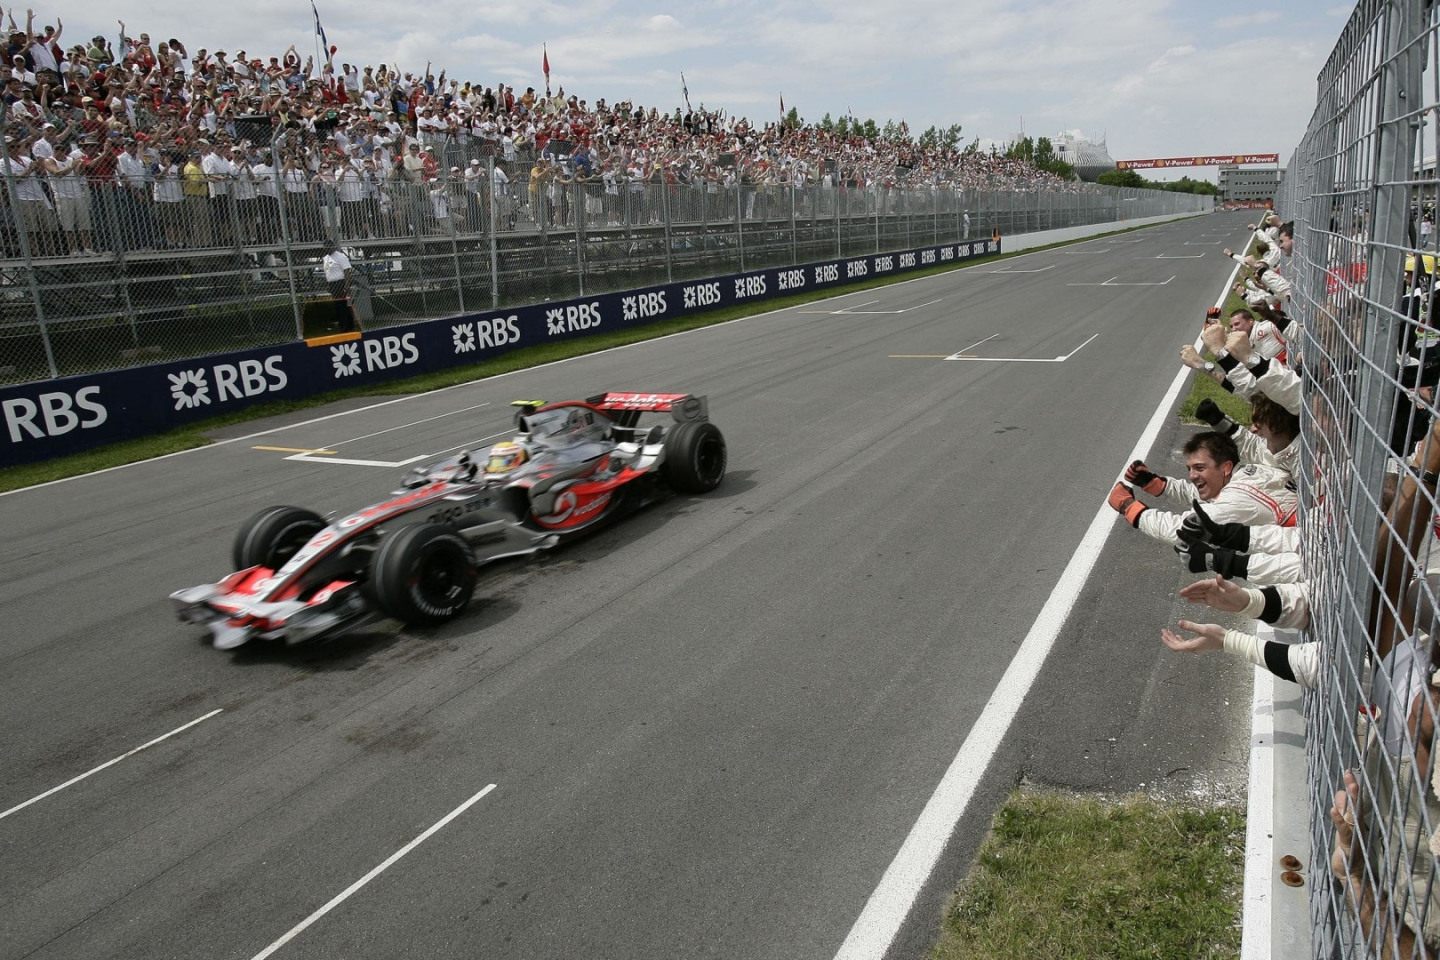 Две недели спустя после скандала на Гран При Монако-2007 Льюис Хэмилтон одержал свою первую победу в Формуле 1, выиграв гонку в Канаде © Mercedes AMG F1